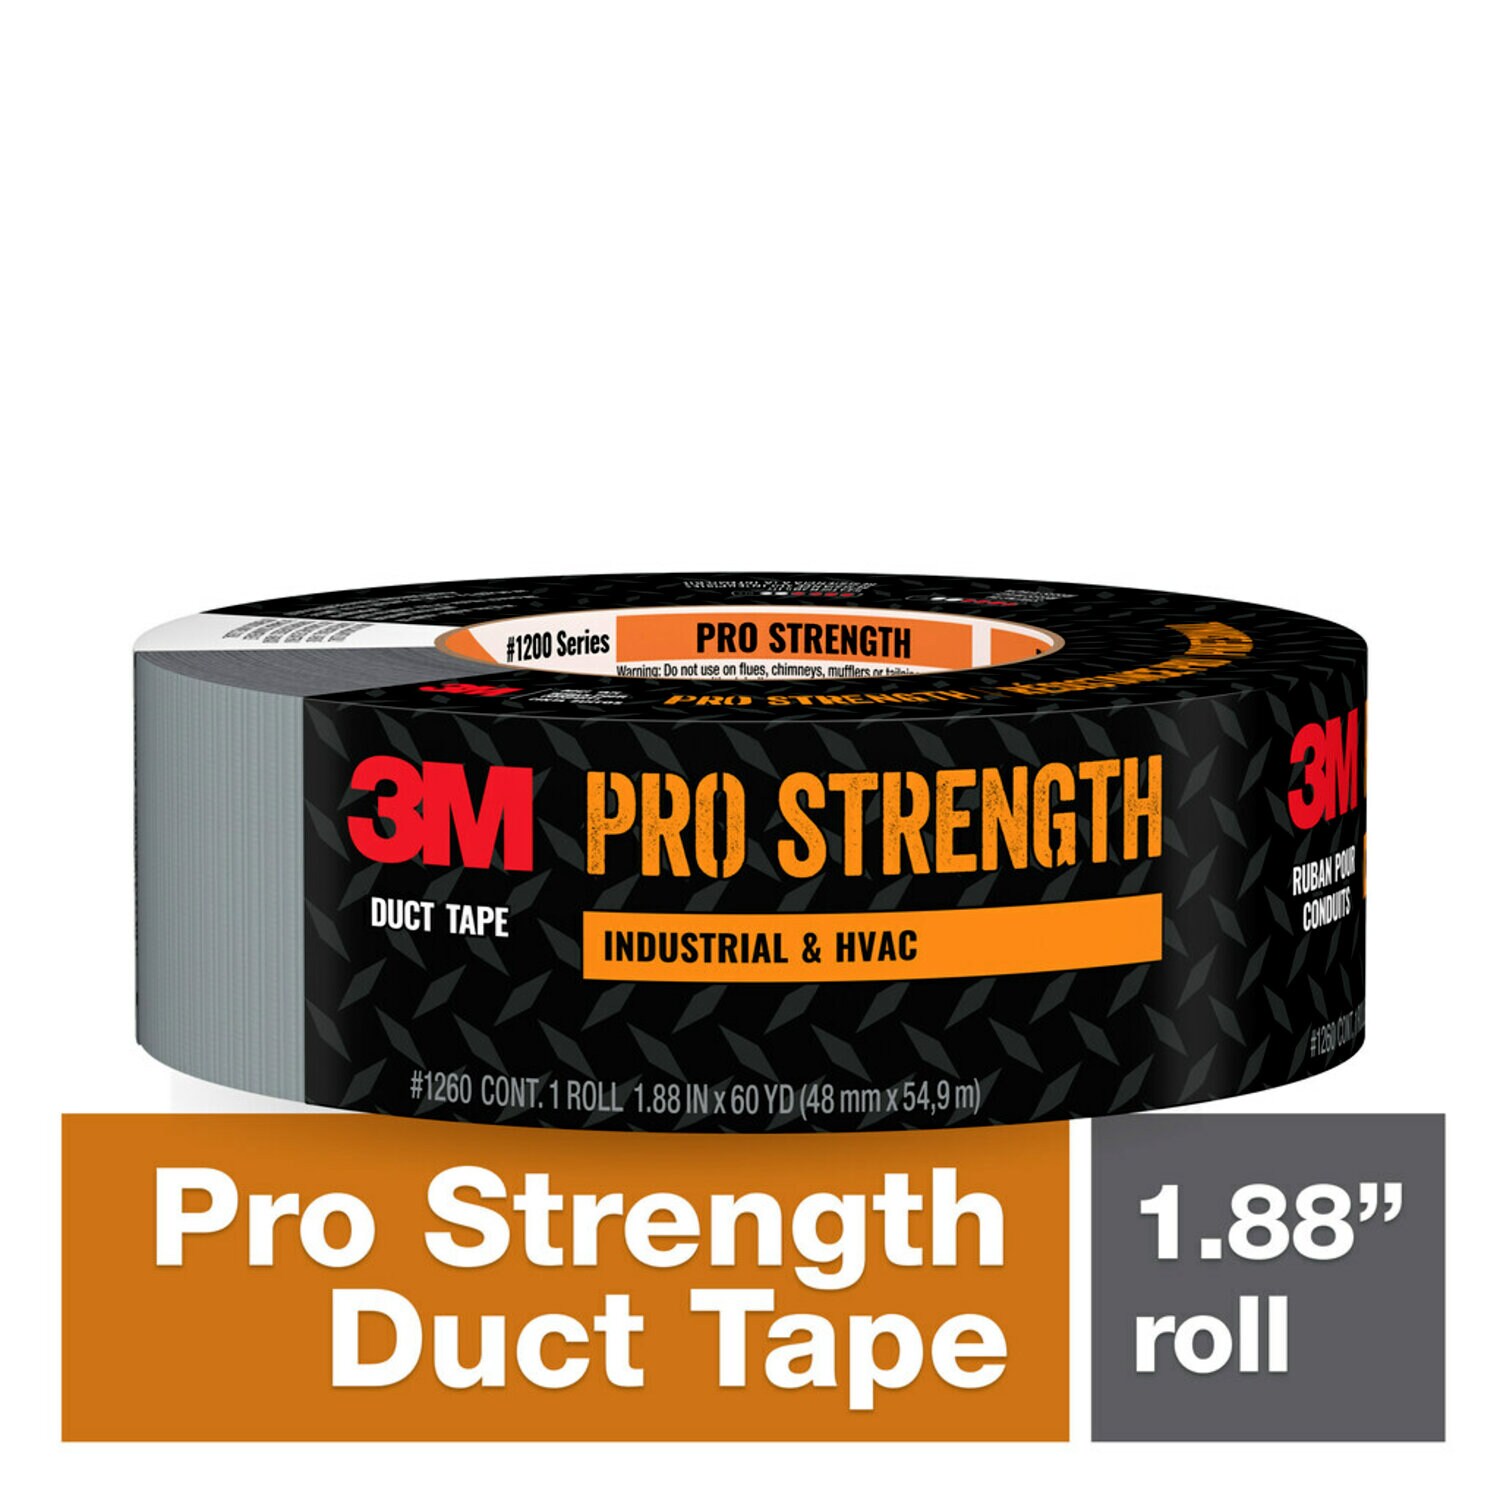 7100258005 - 3M Pro Strength Duct Tape 1260-C 1.88 in x 60 yd (48 mm x 54.8 m) 9 rls/cs